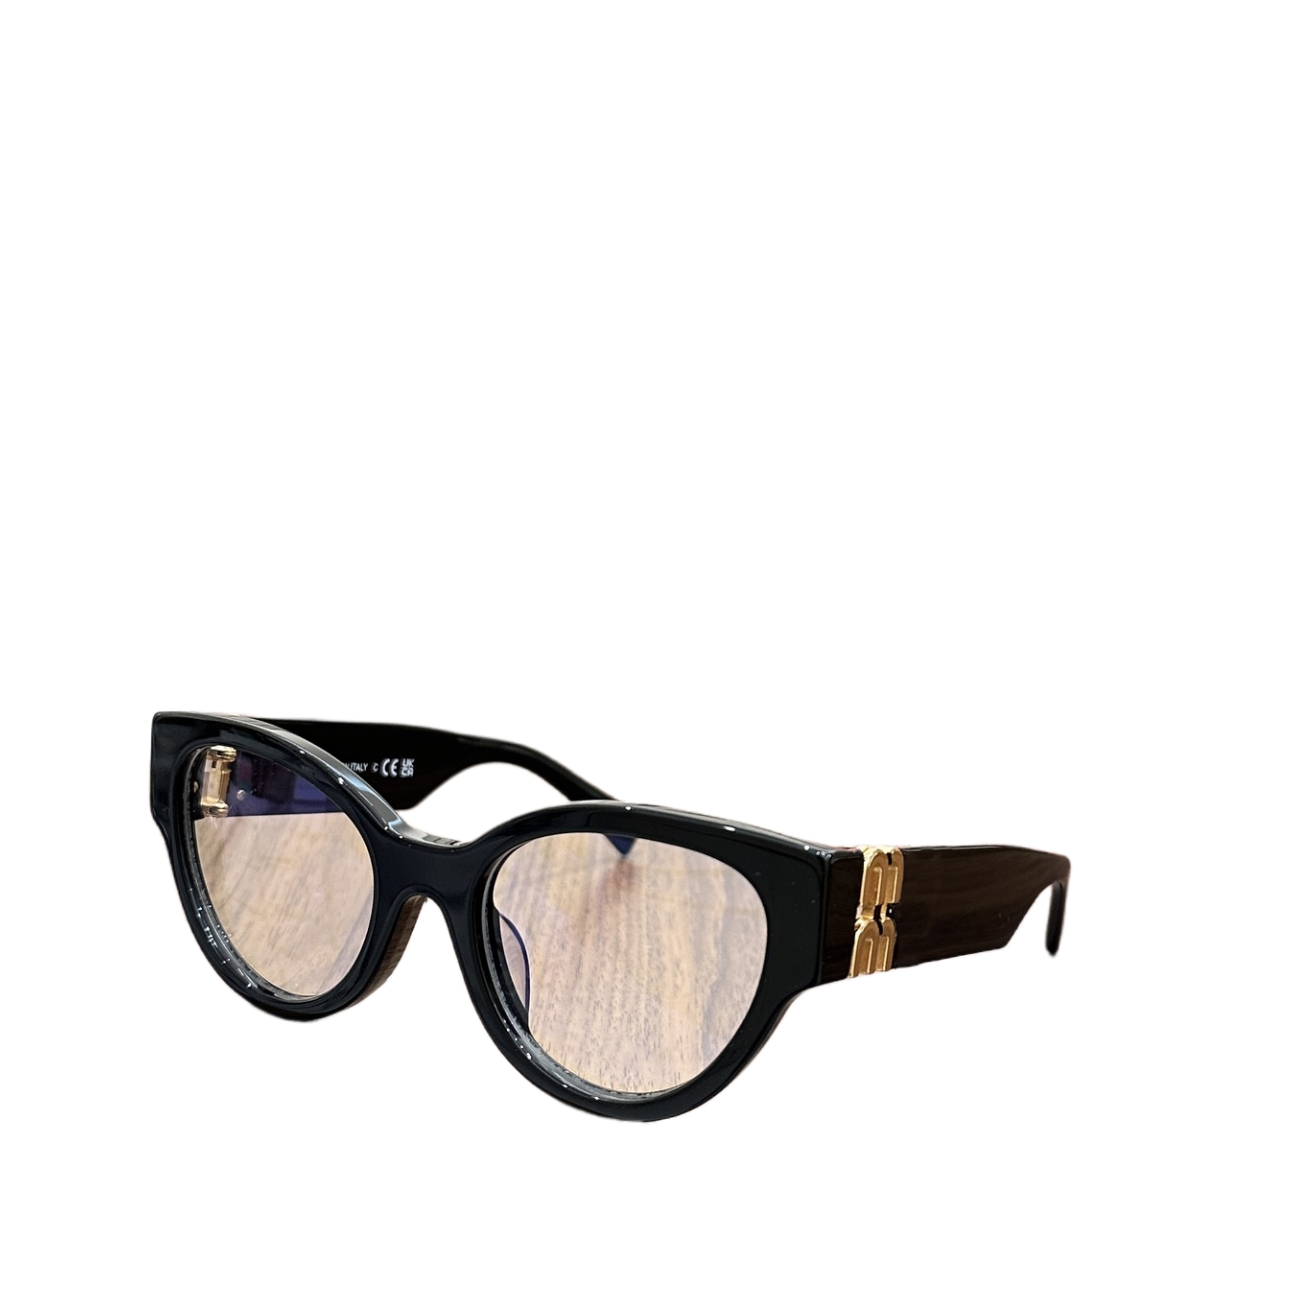 Дизайнерские солнцезащитные очки Read солнцезащитные очки женские очки Европейская и американская элегантность Повседневная модная одежда оптическая оправа Настраиваемые линзы по рецепту RNKI